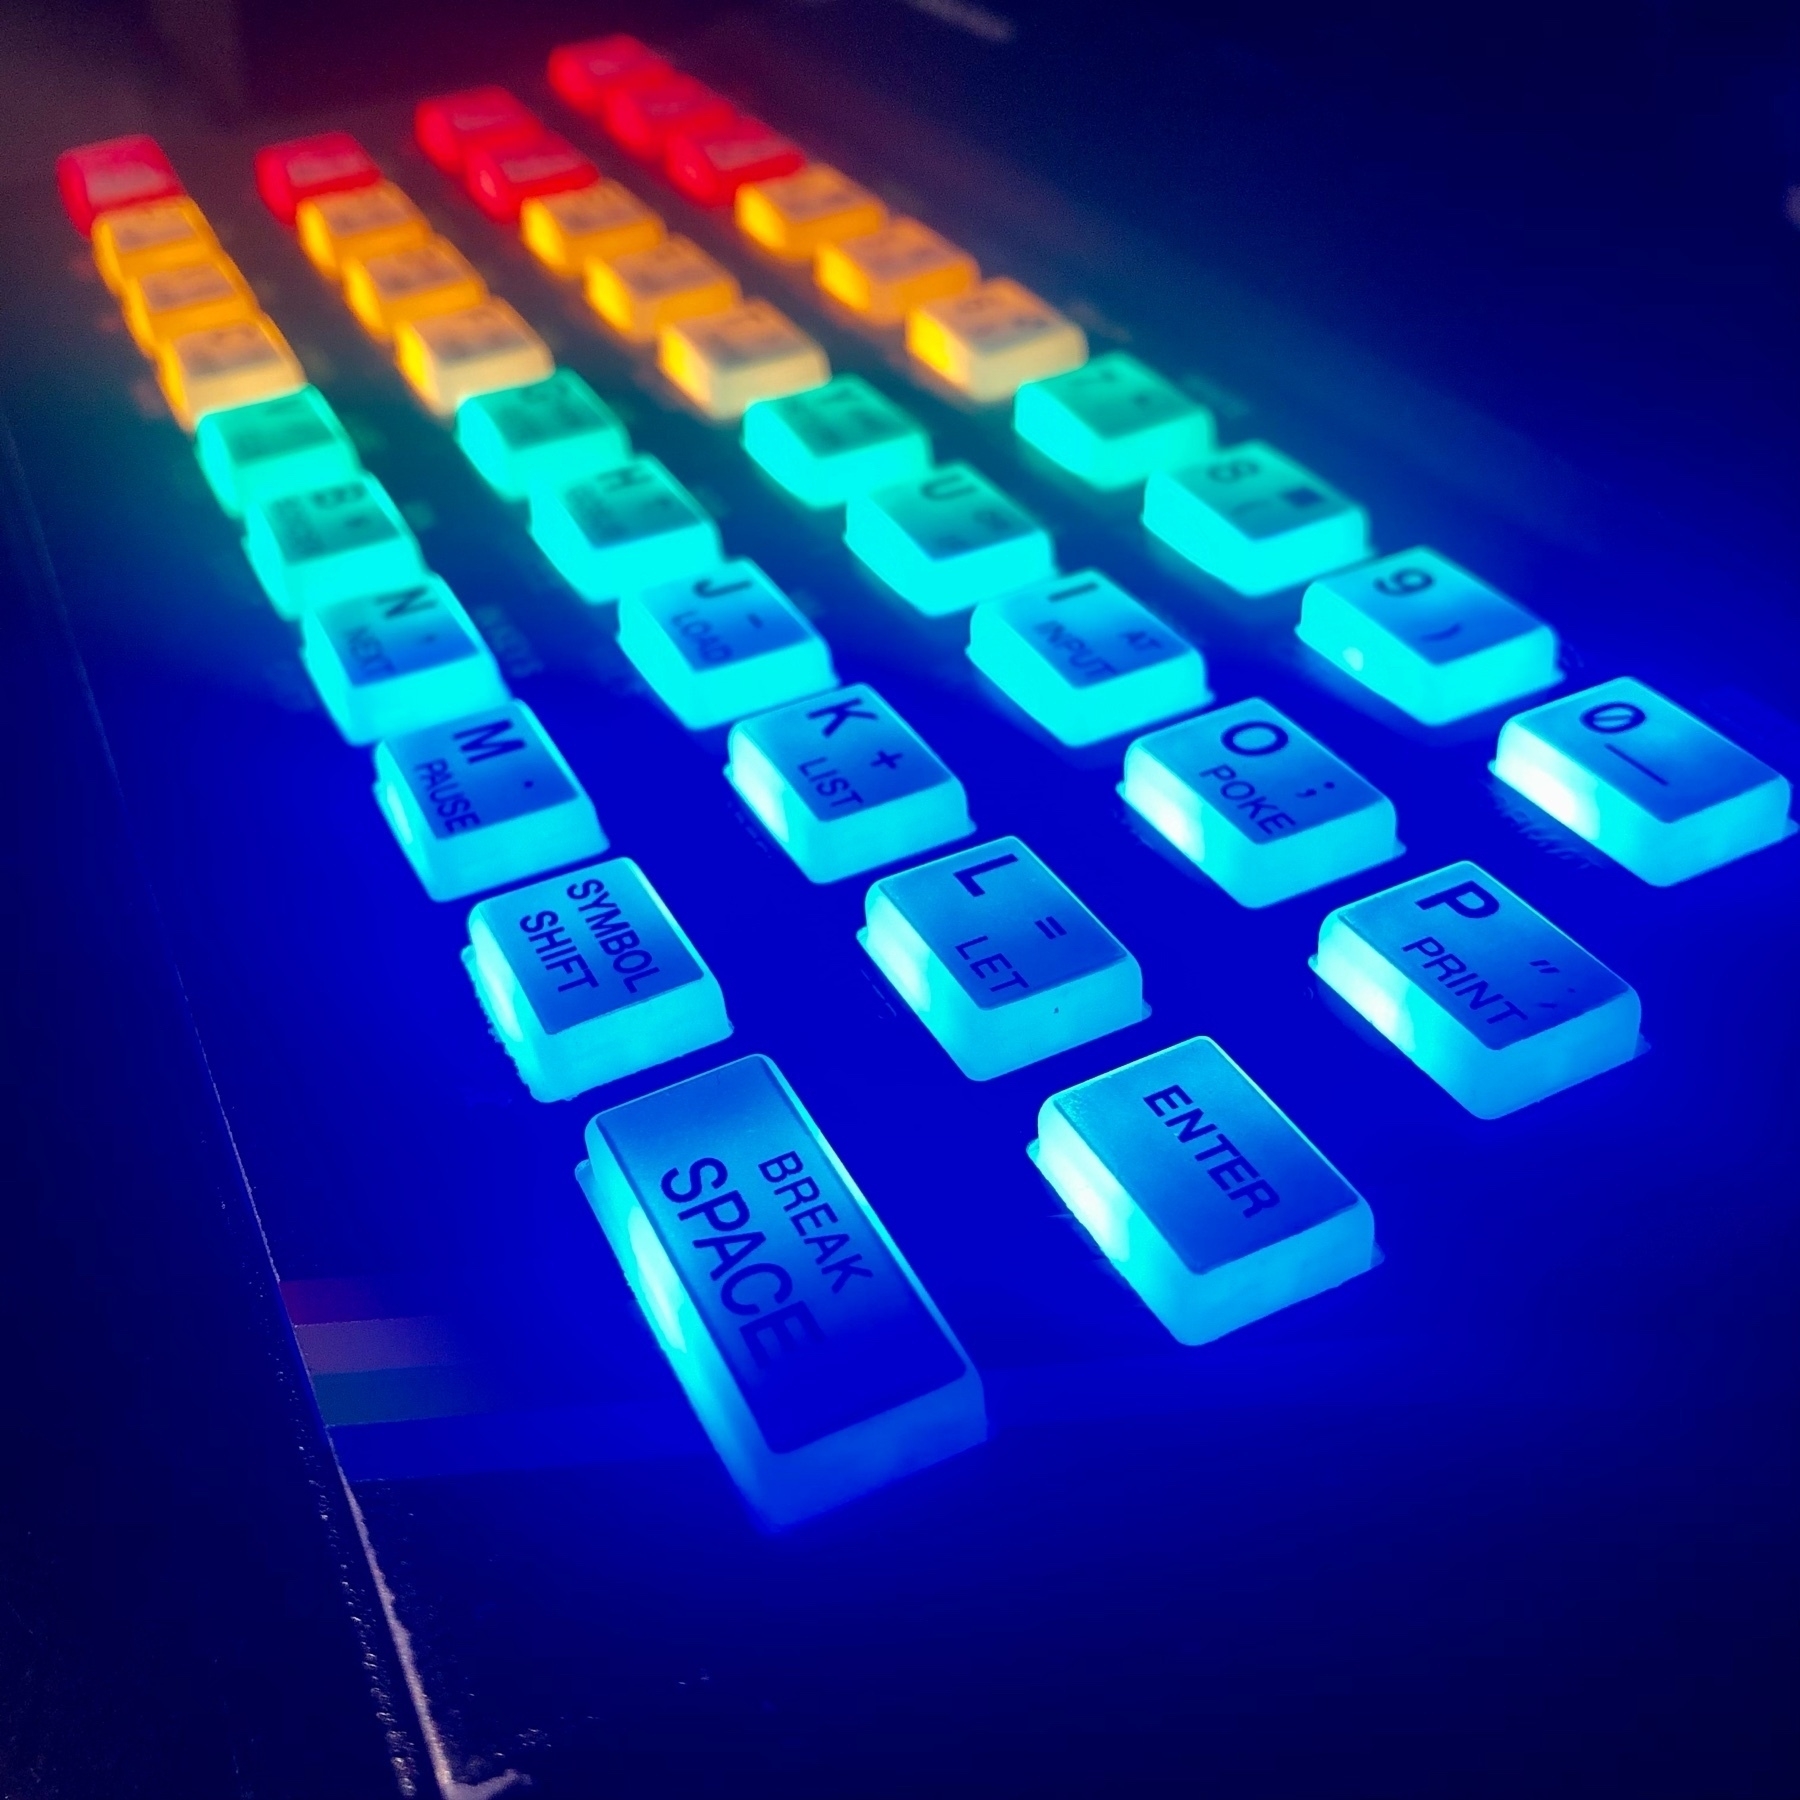 ZX Spectrum with illuminated rainbow keyboard